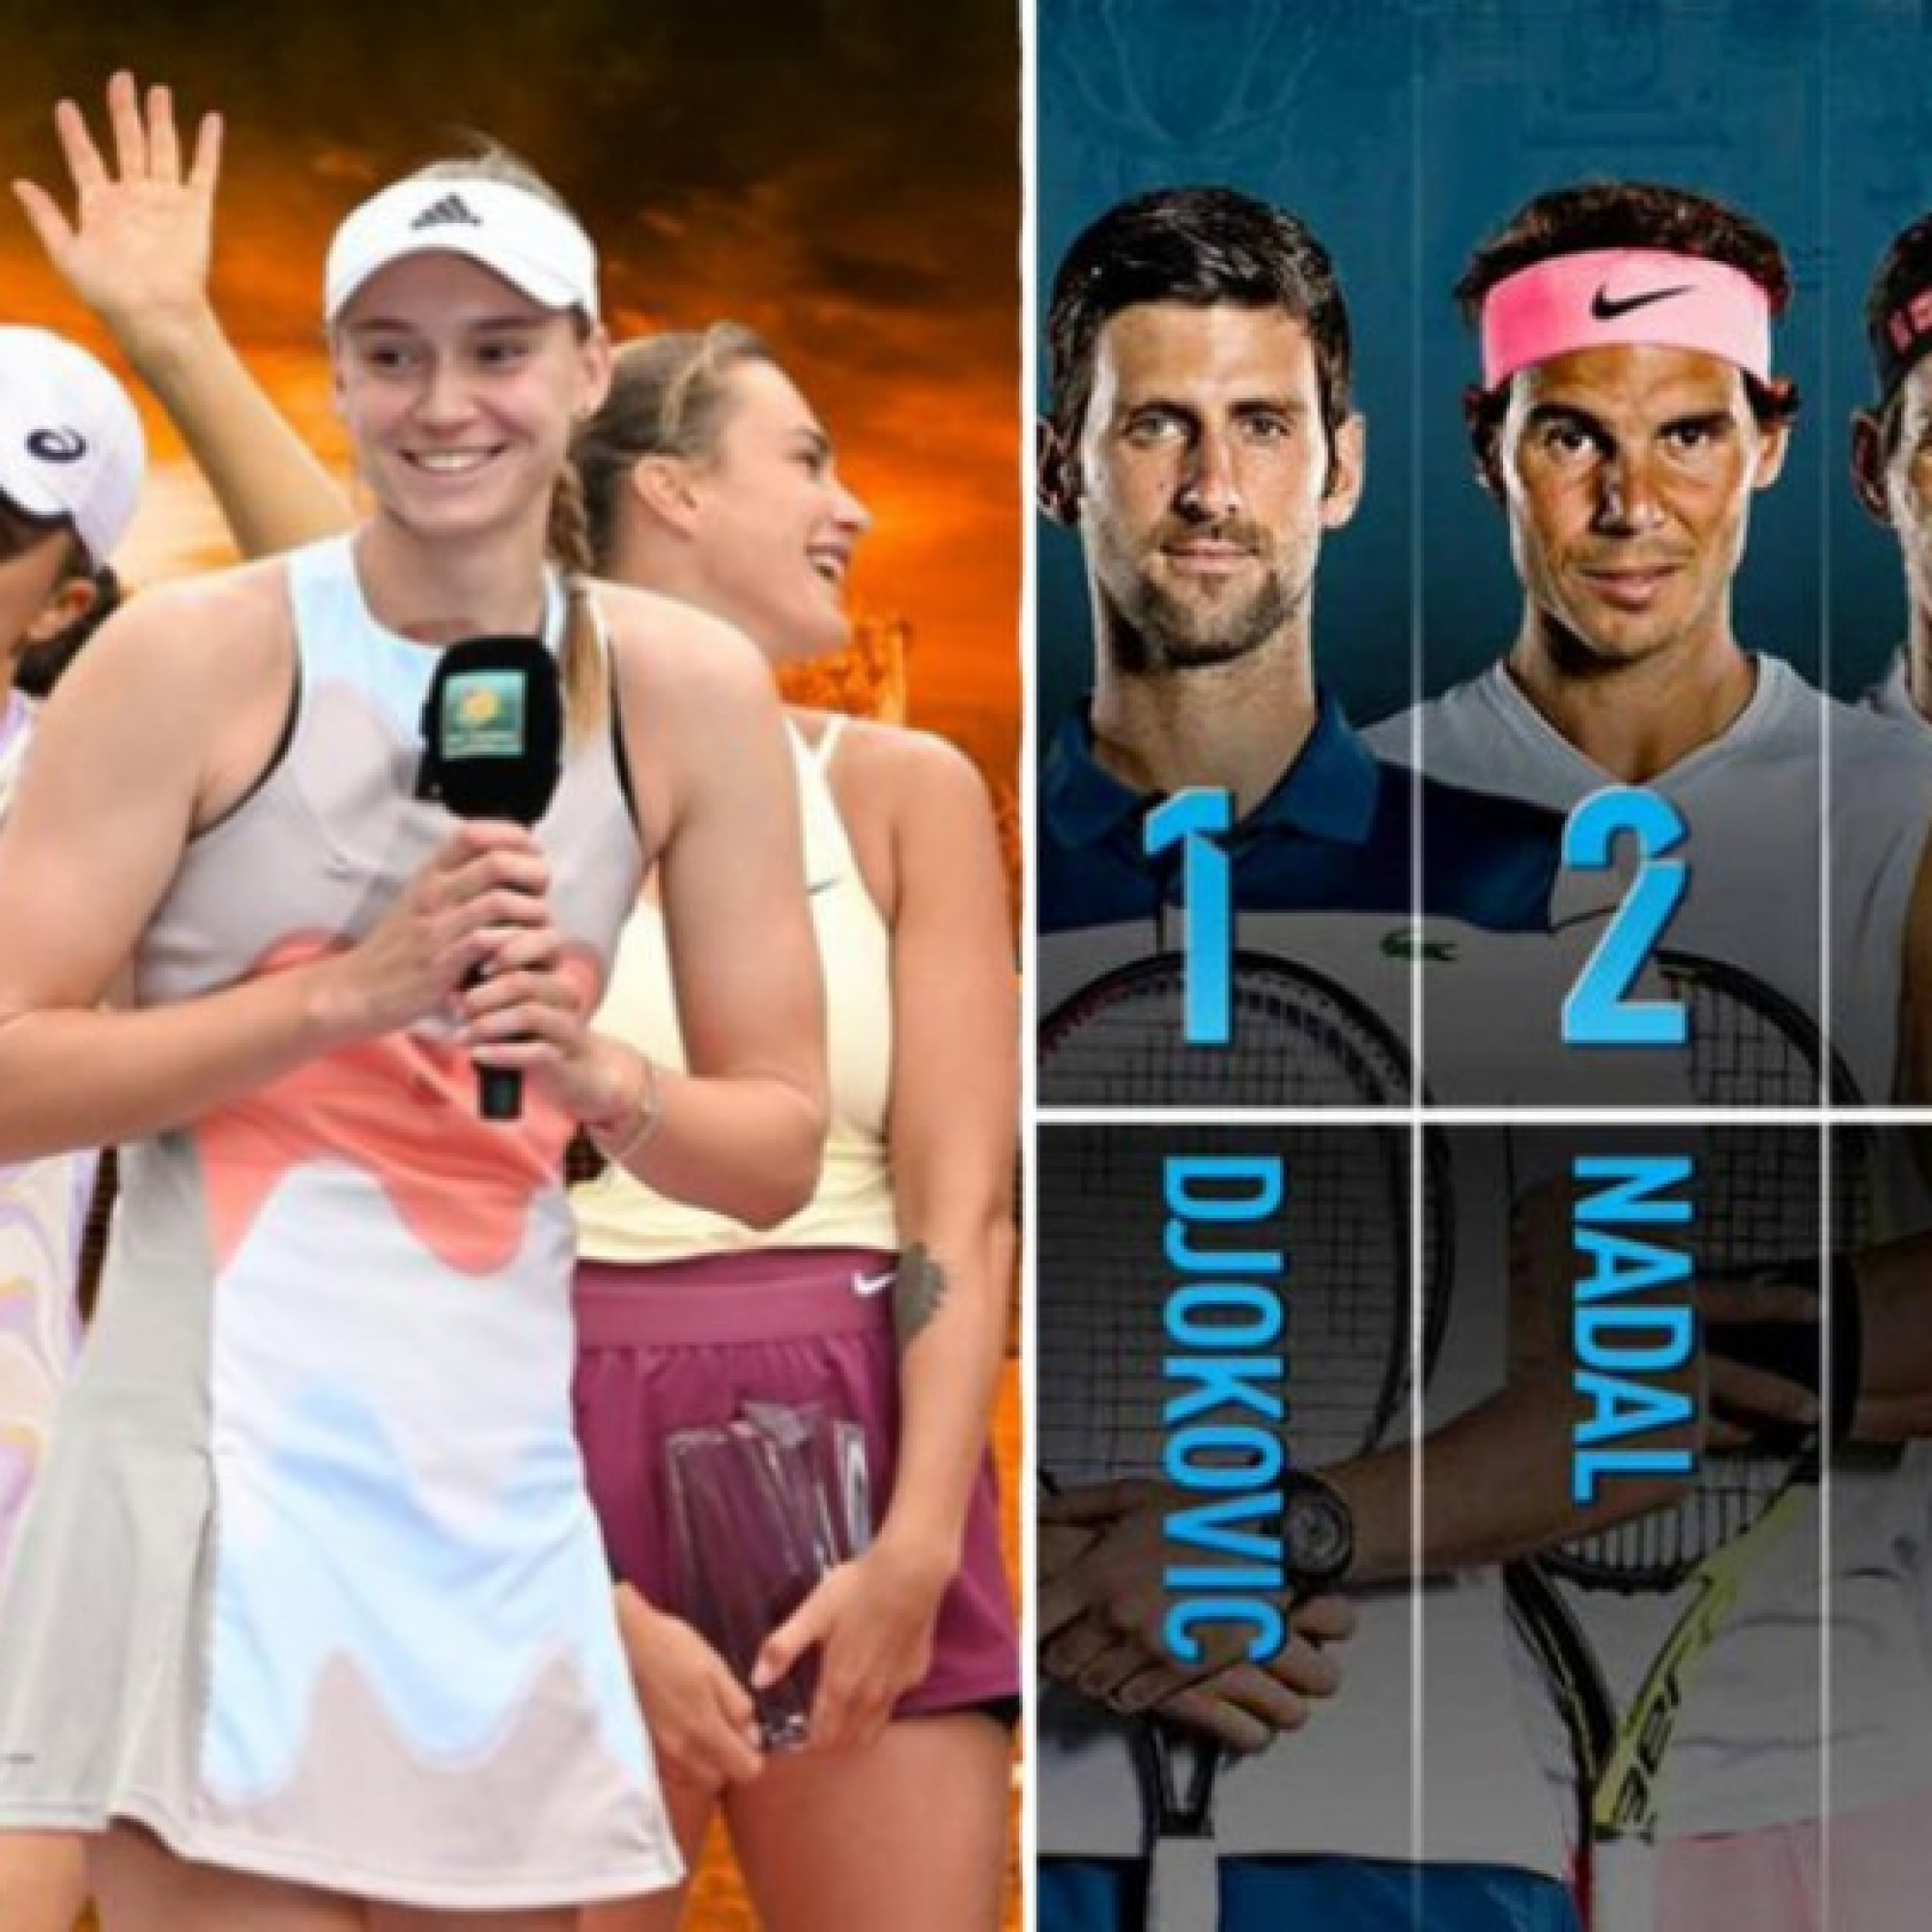  - Nóng nhất thể thao sáng 23/3: Tennis nữ sắp có "Big 3" như Federer, Nadal, Djokovic